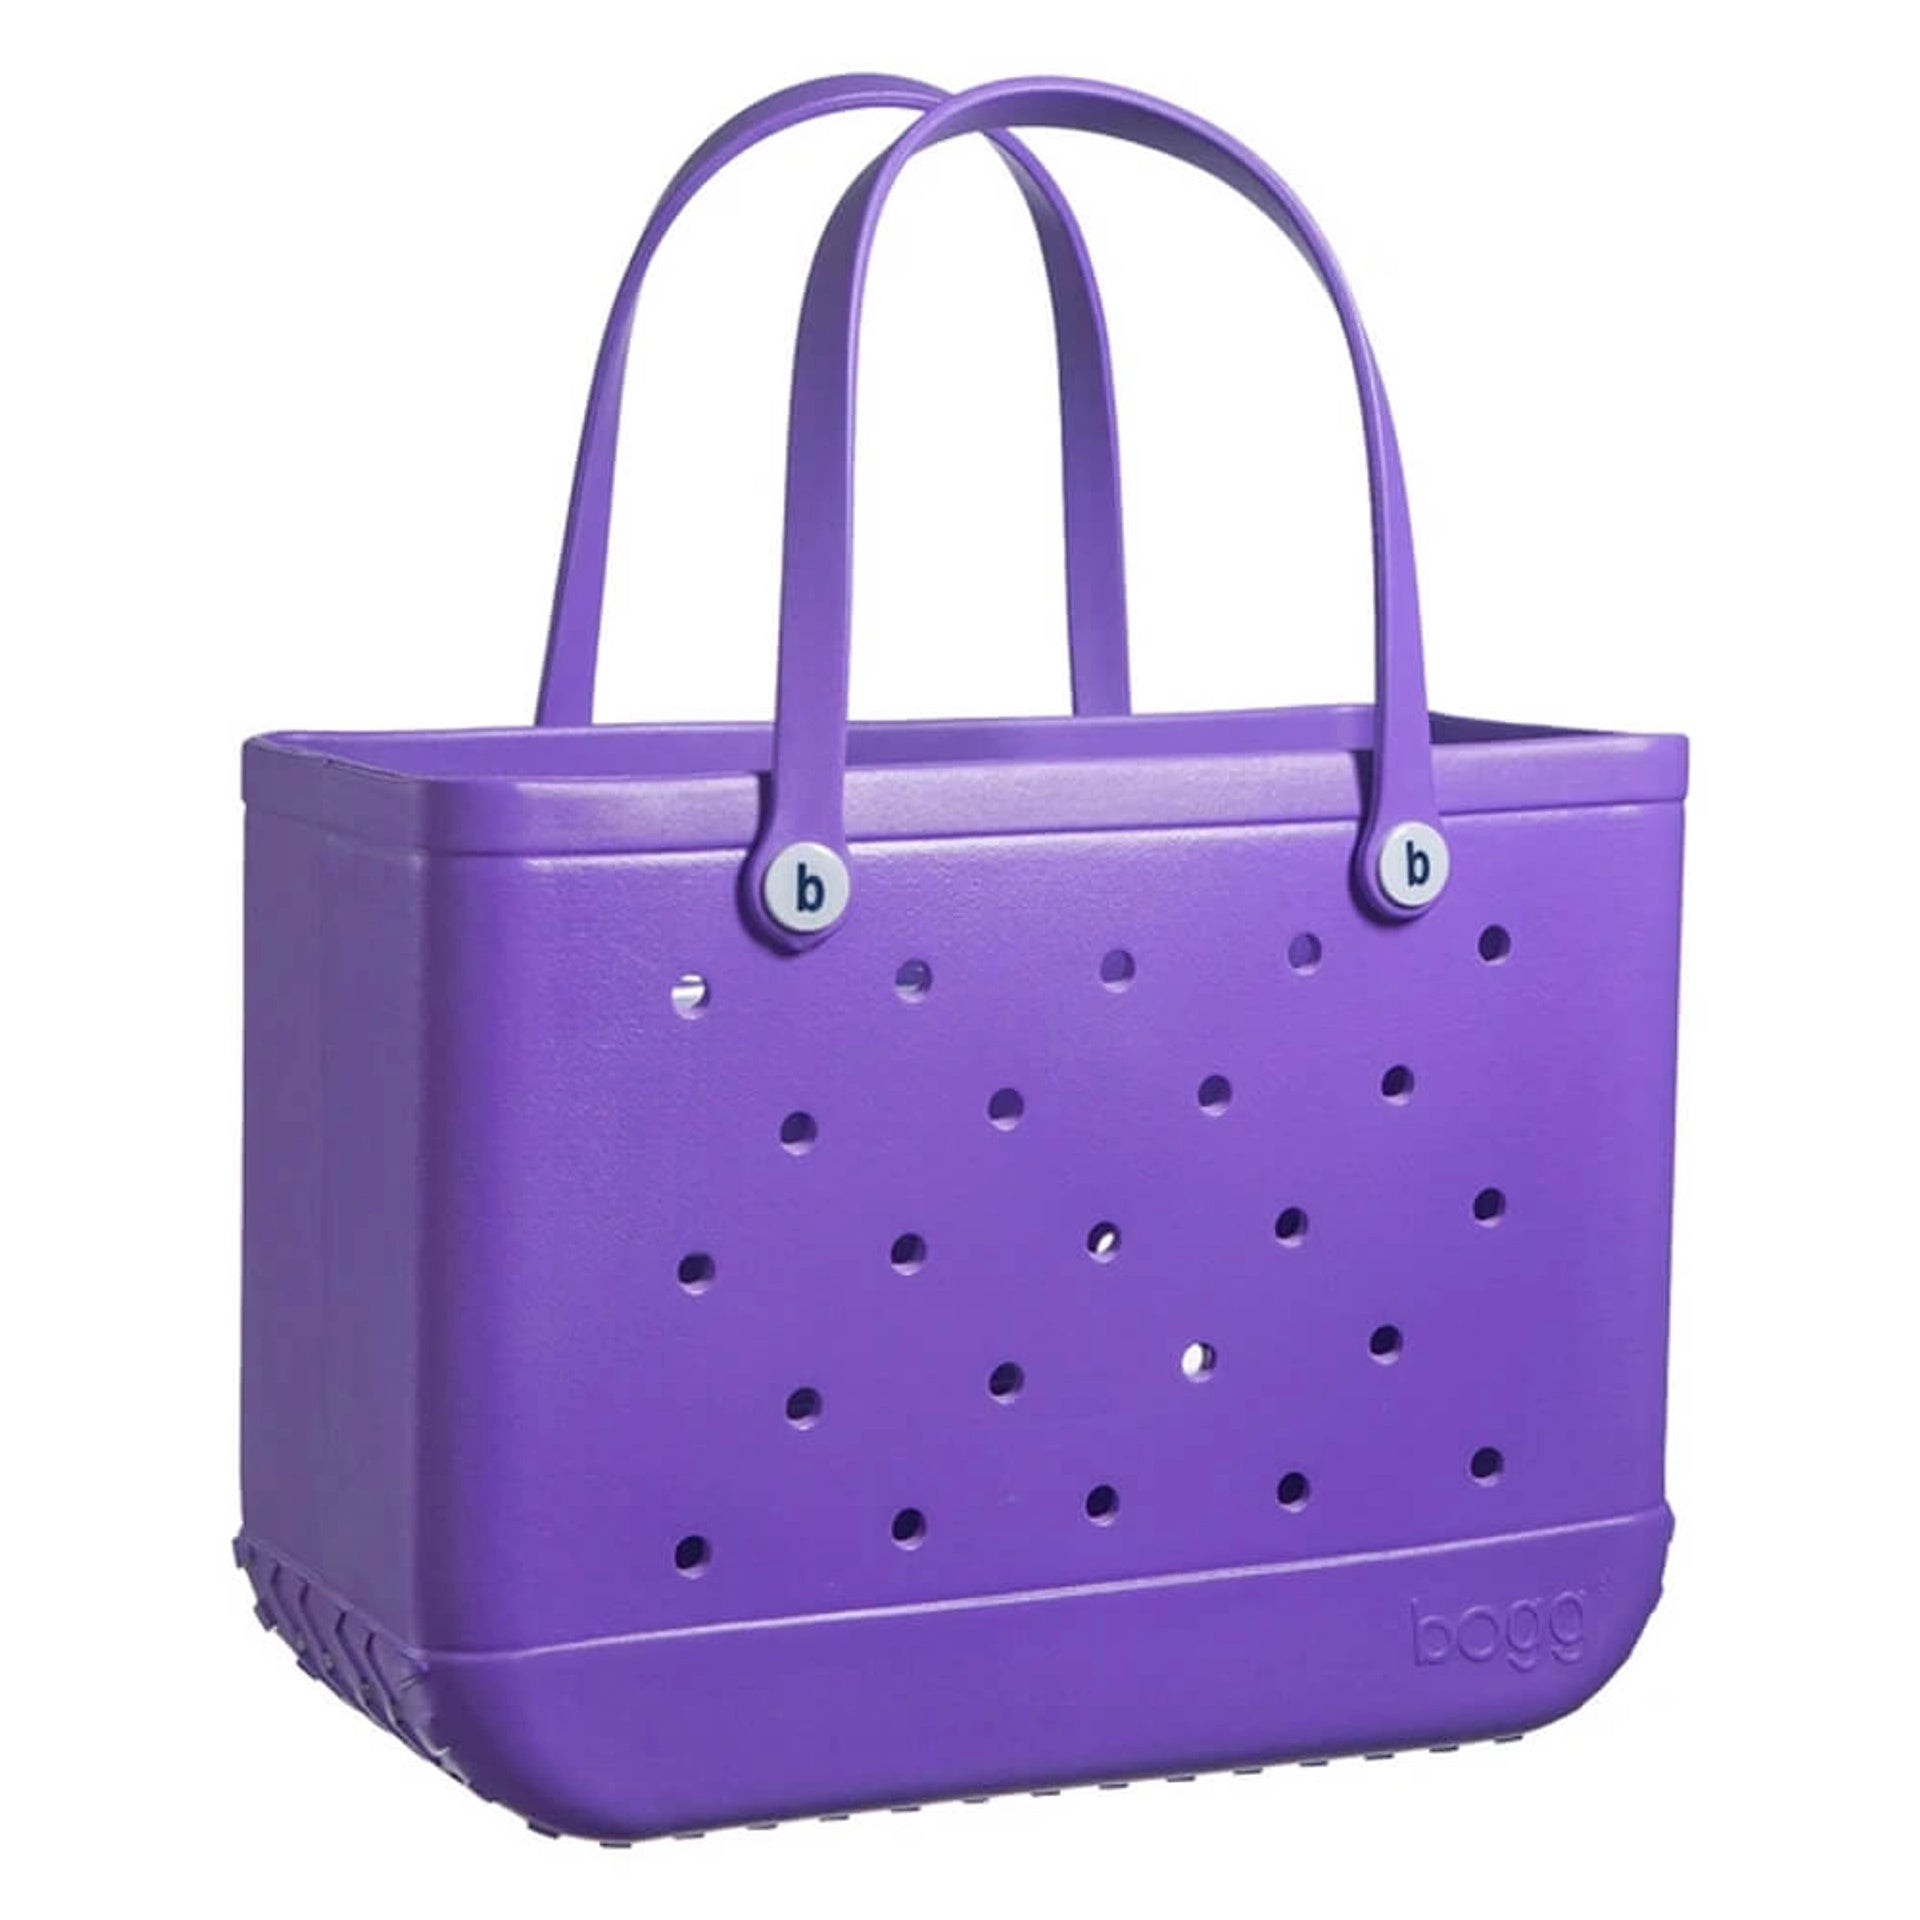 Buy purple Original Bogg Bag Tote